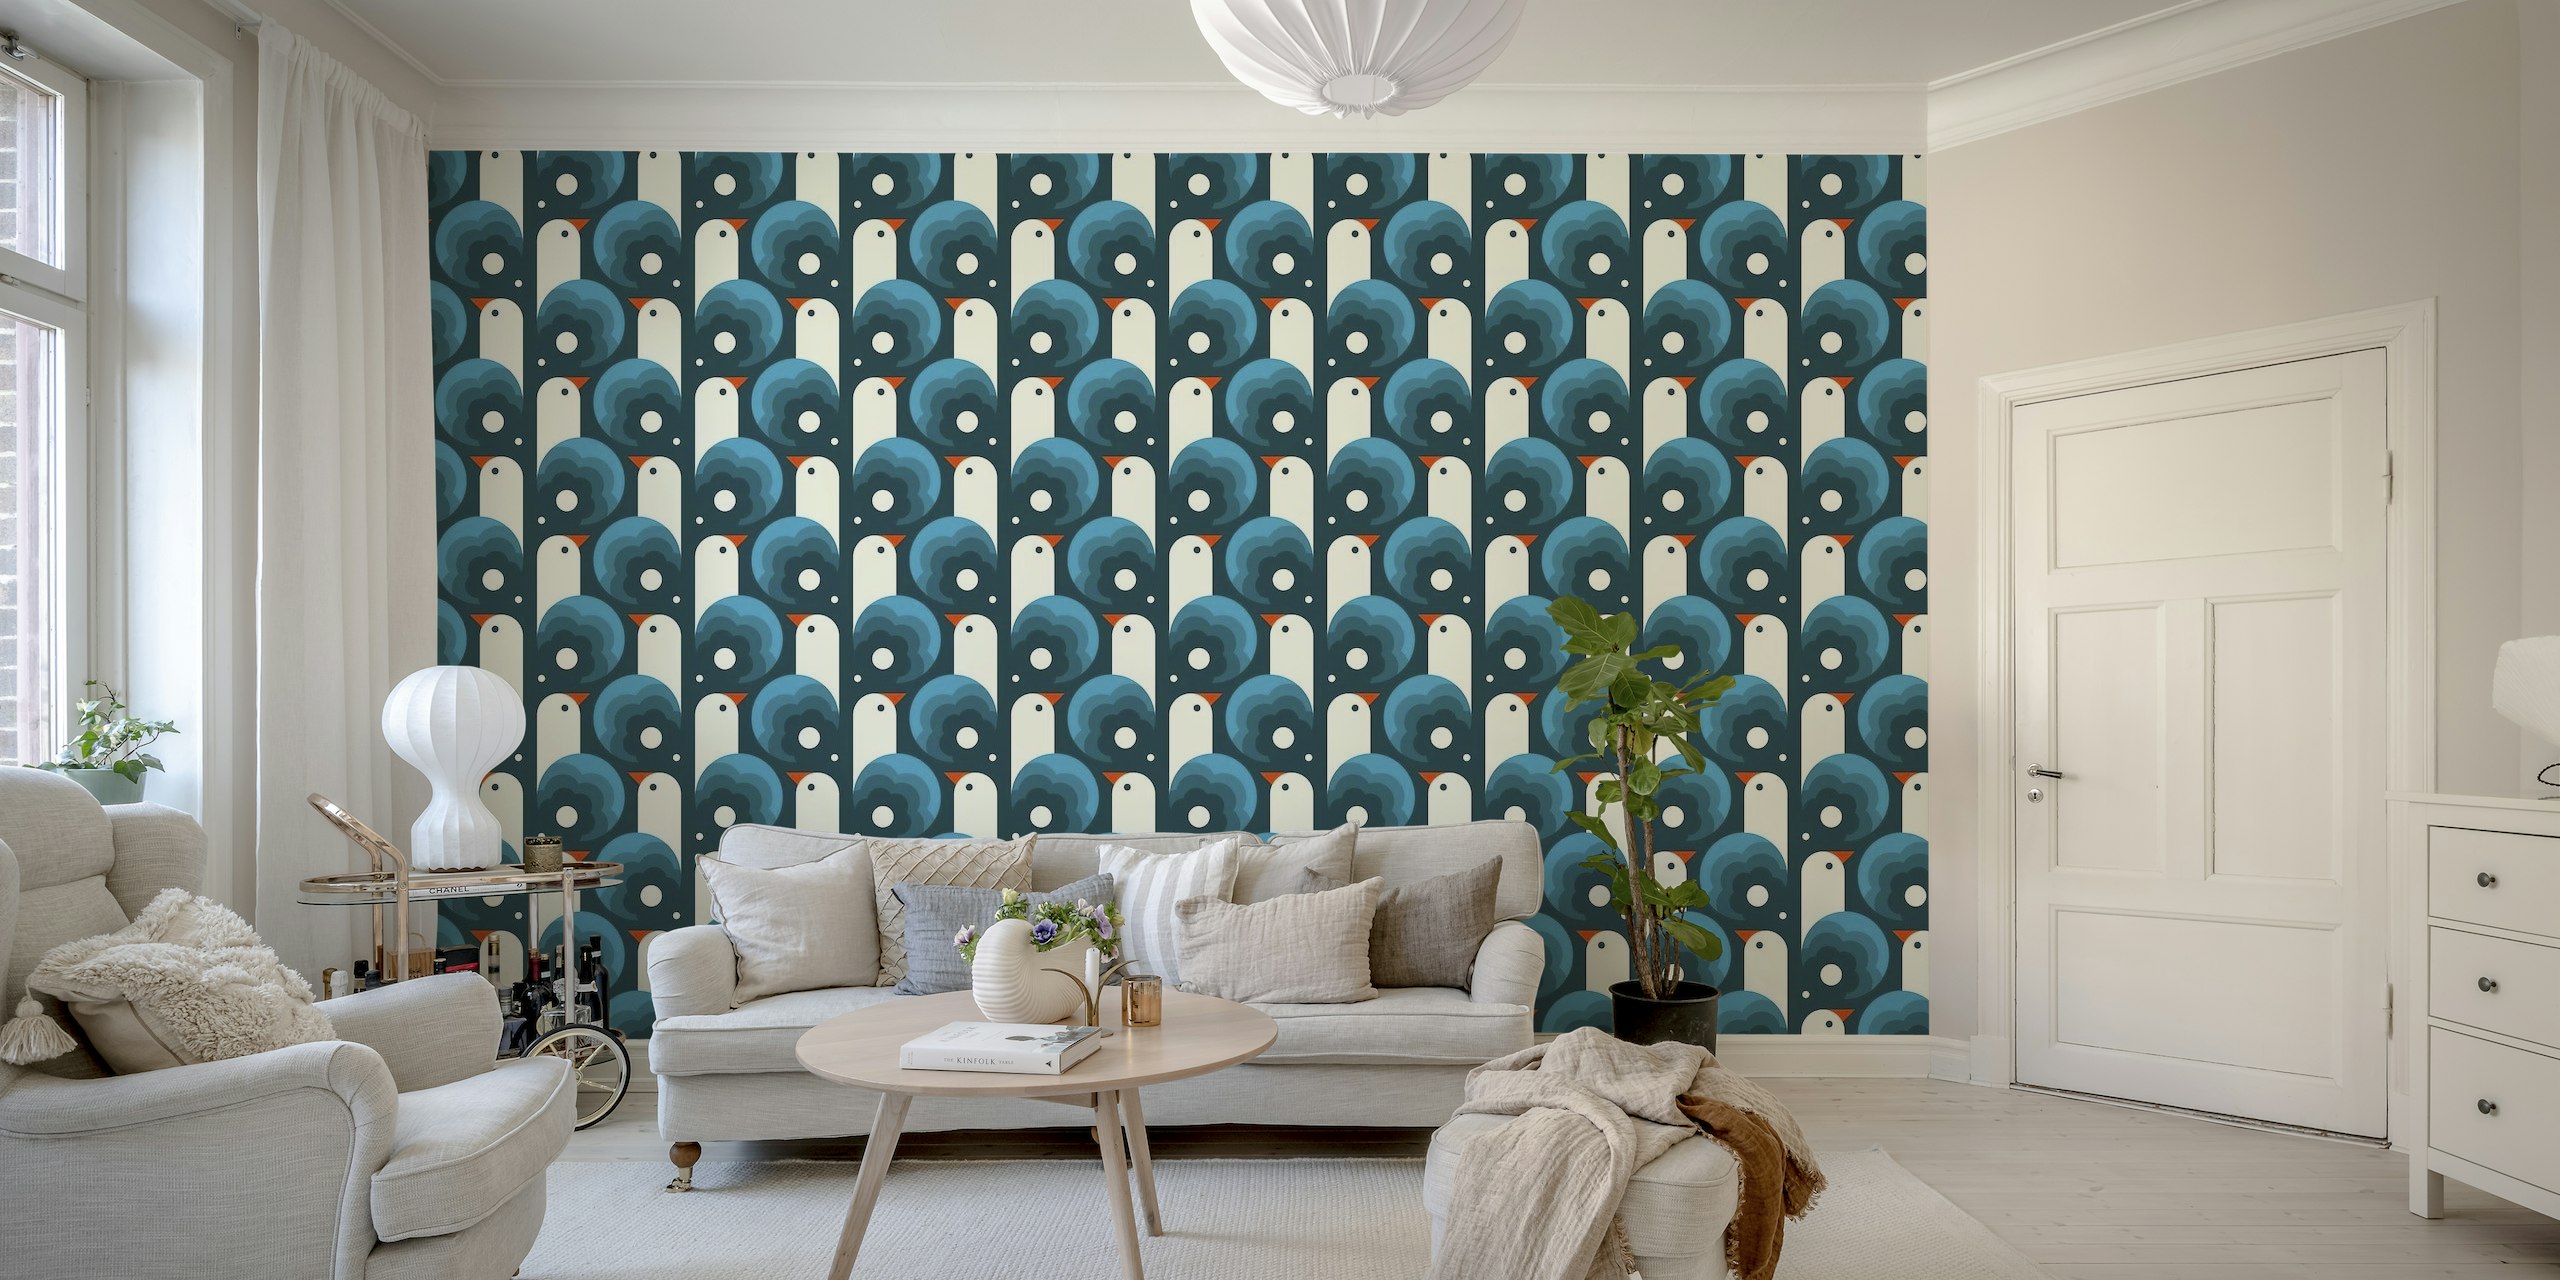 Abstract blauw fotobehang met gestileerde speelse vogels en decoratieve patronen